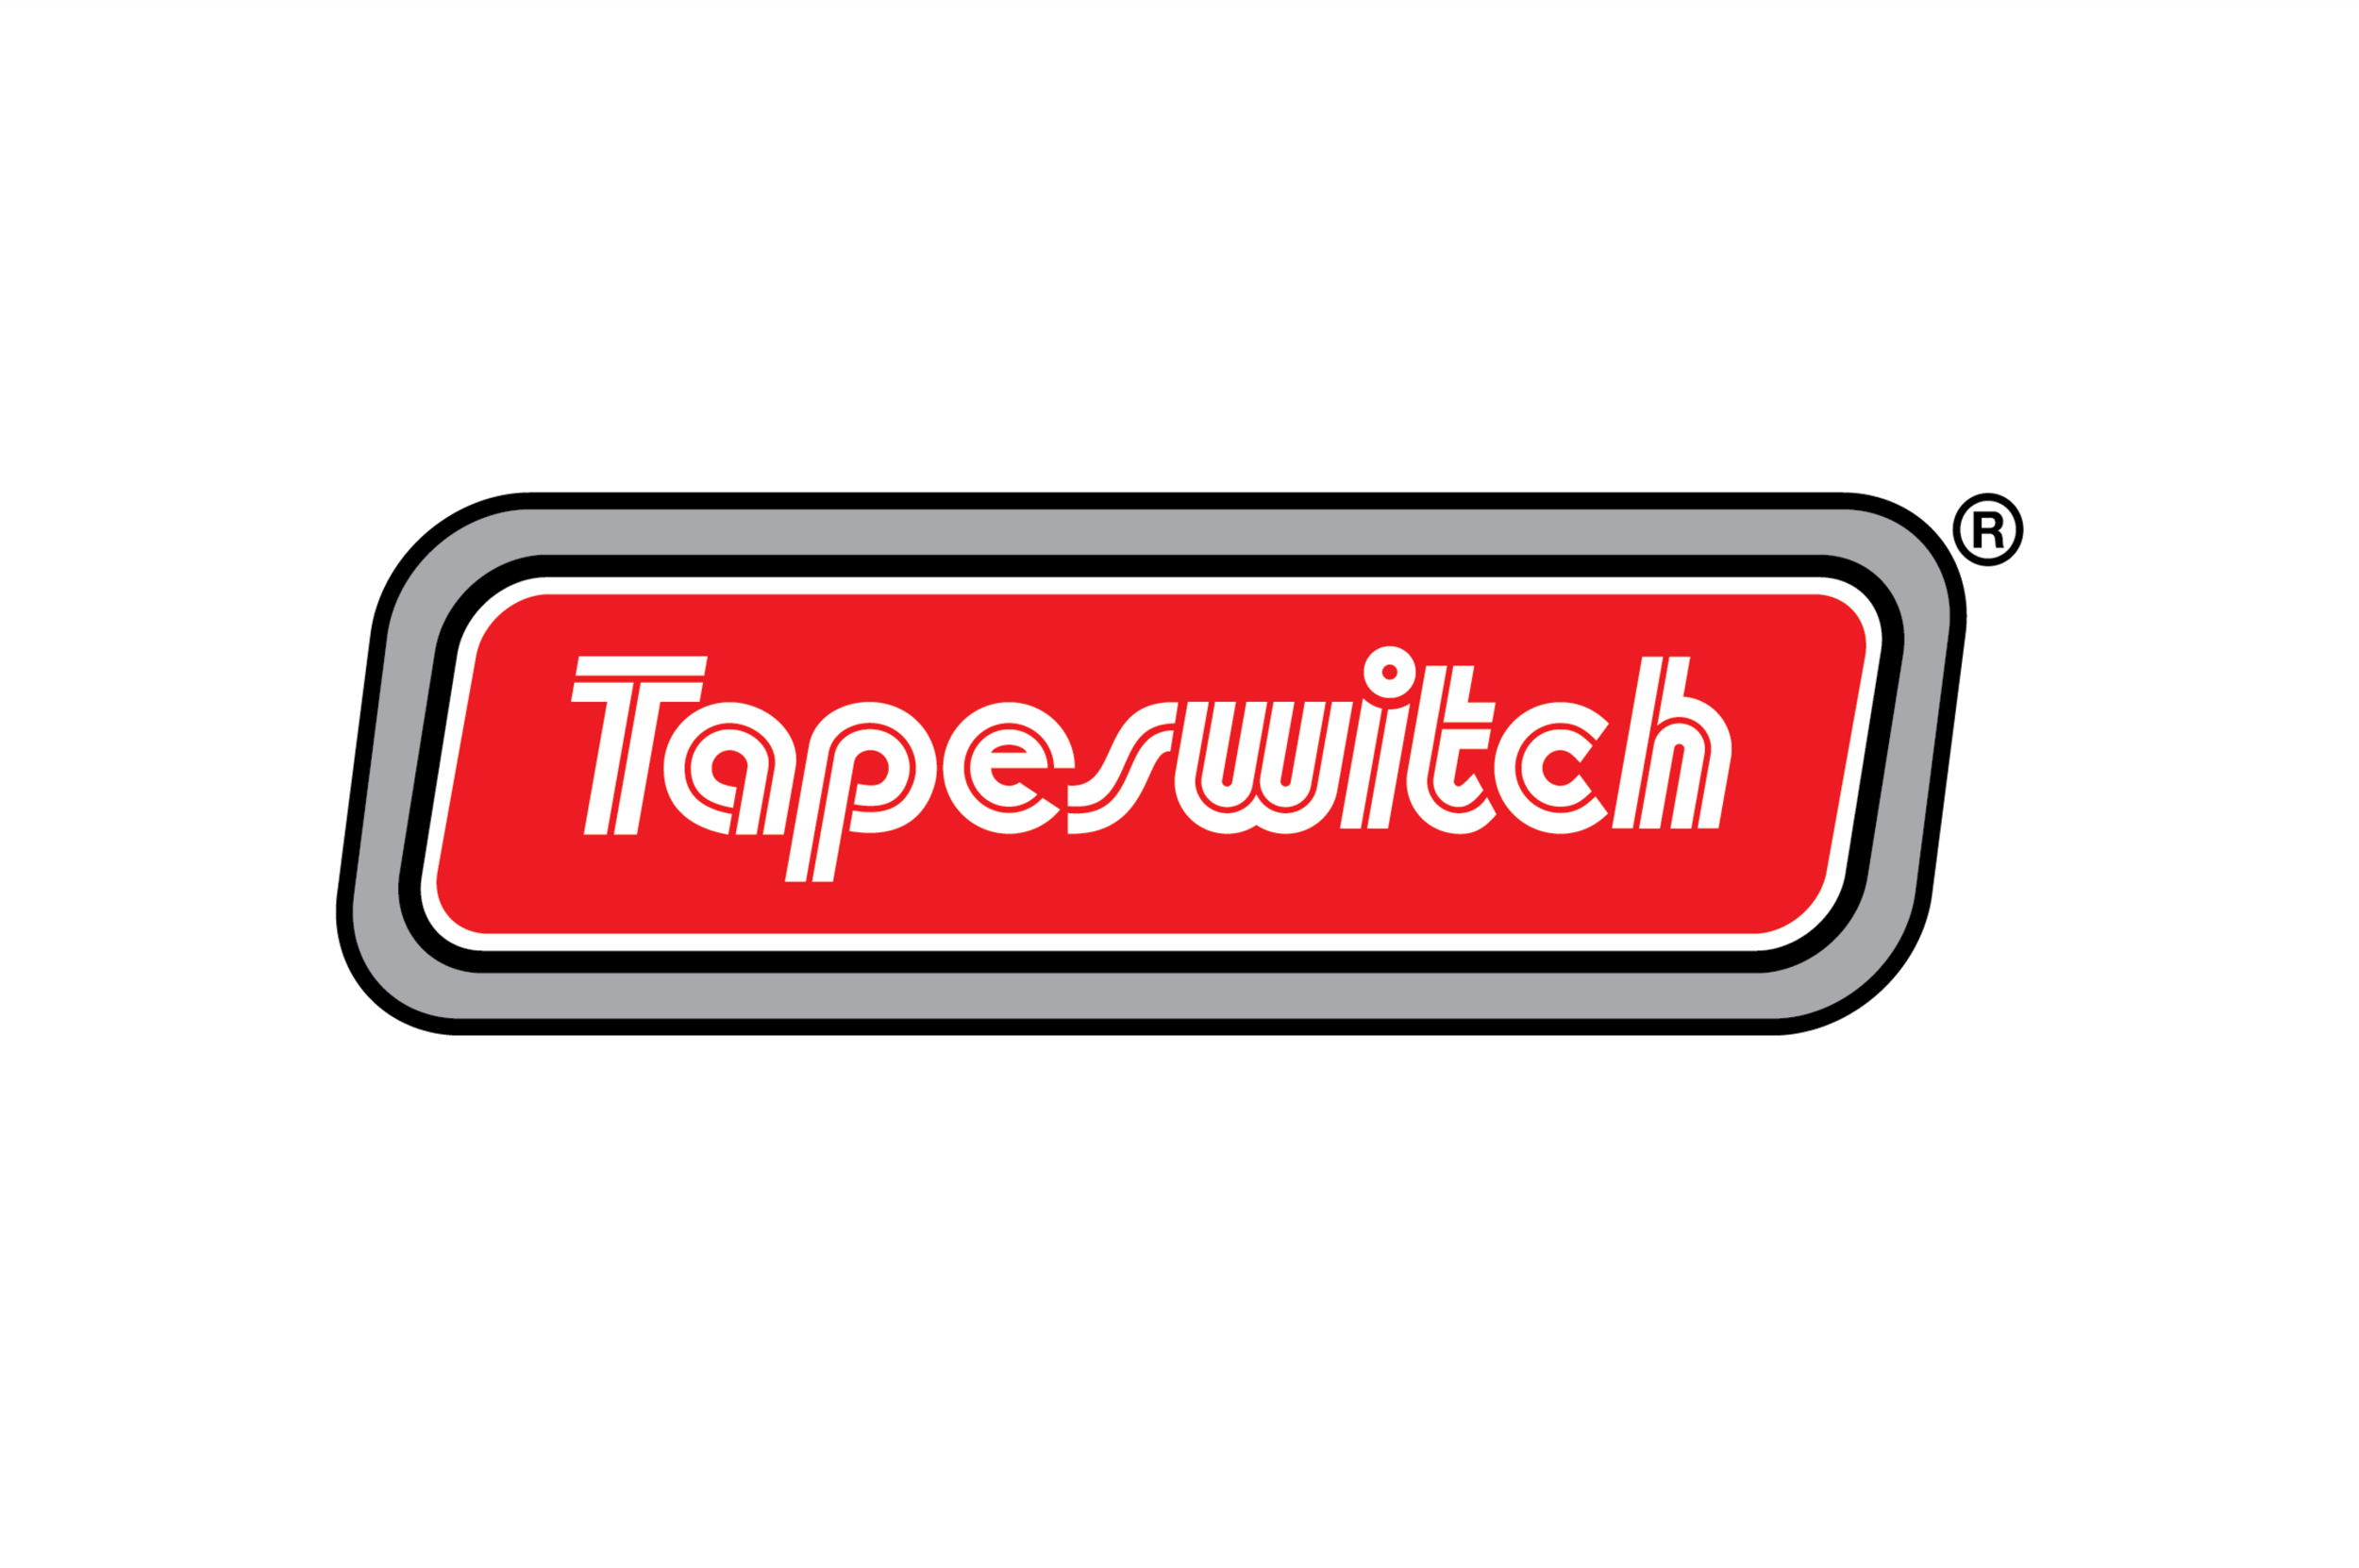 Movetec päämies Tapeswitch logo